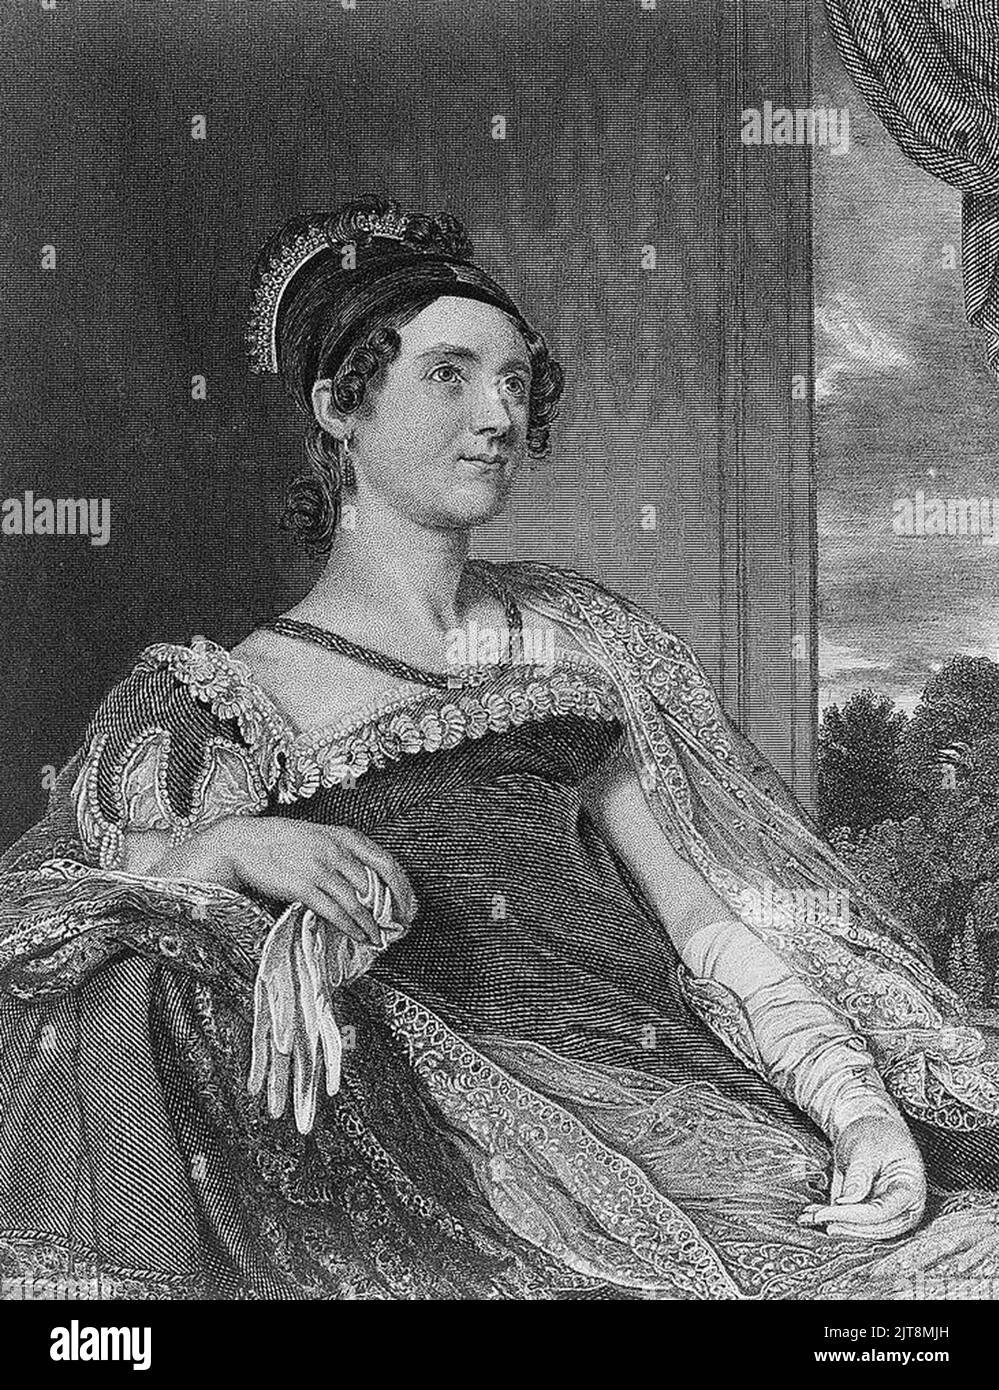 Un portrait de Louisa Catherine Johnson Adams. Elle était la femme et la première dame de John Quincy Adams, le président des États-Unis en 6th. Banque D'Images